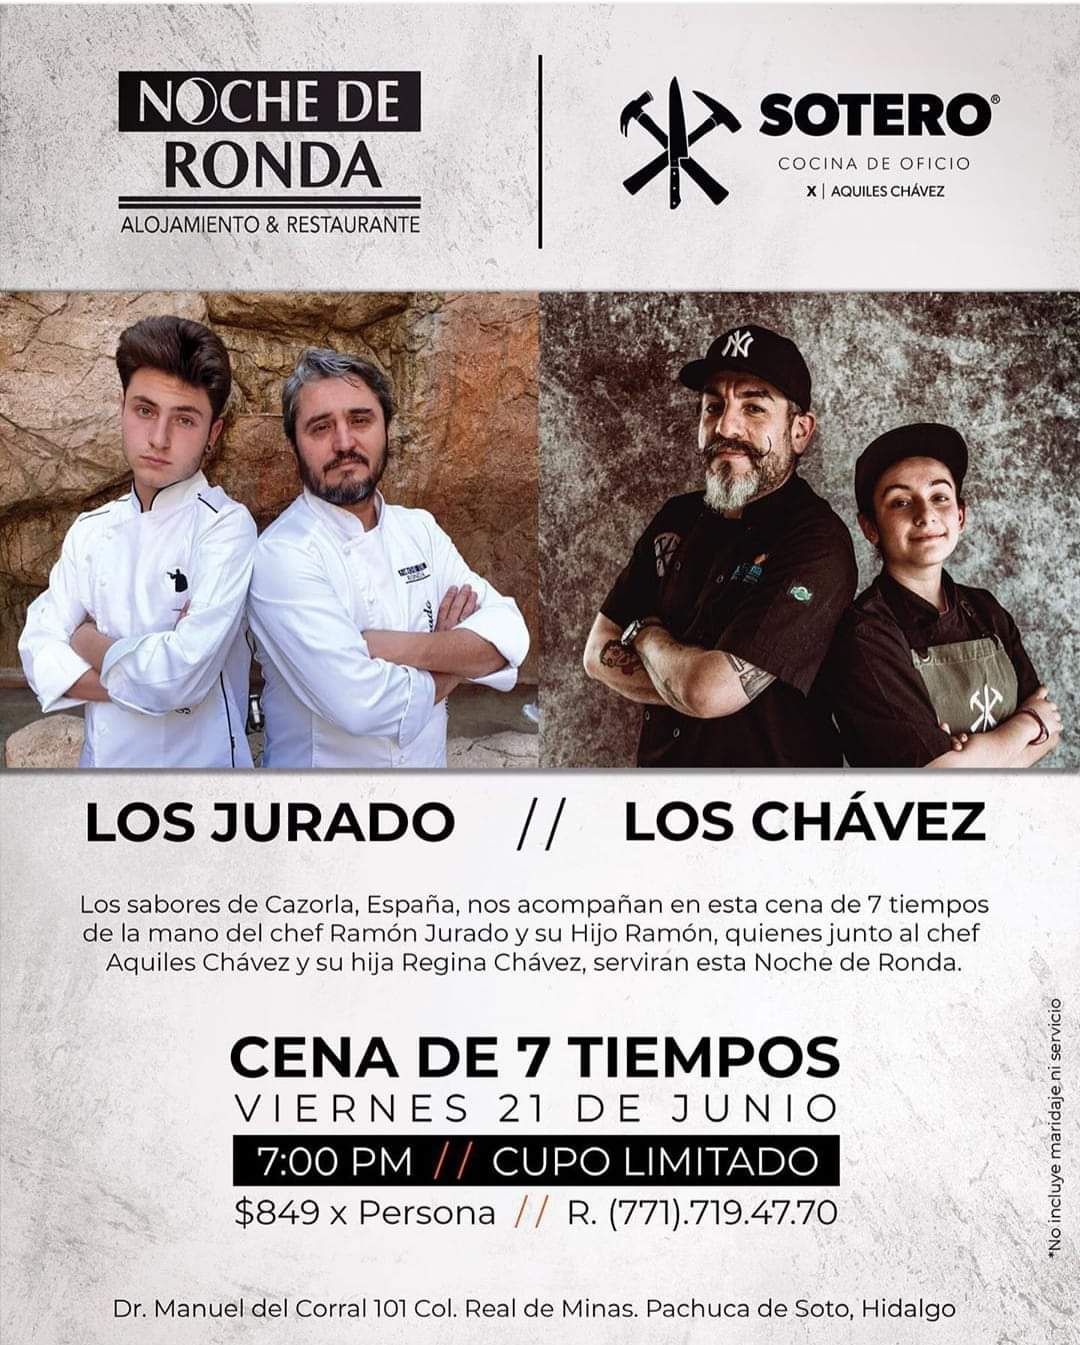 Colaboración con el Chef Aquiles Chávez 2019